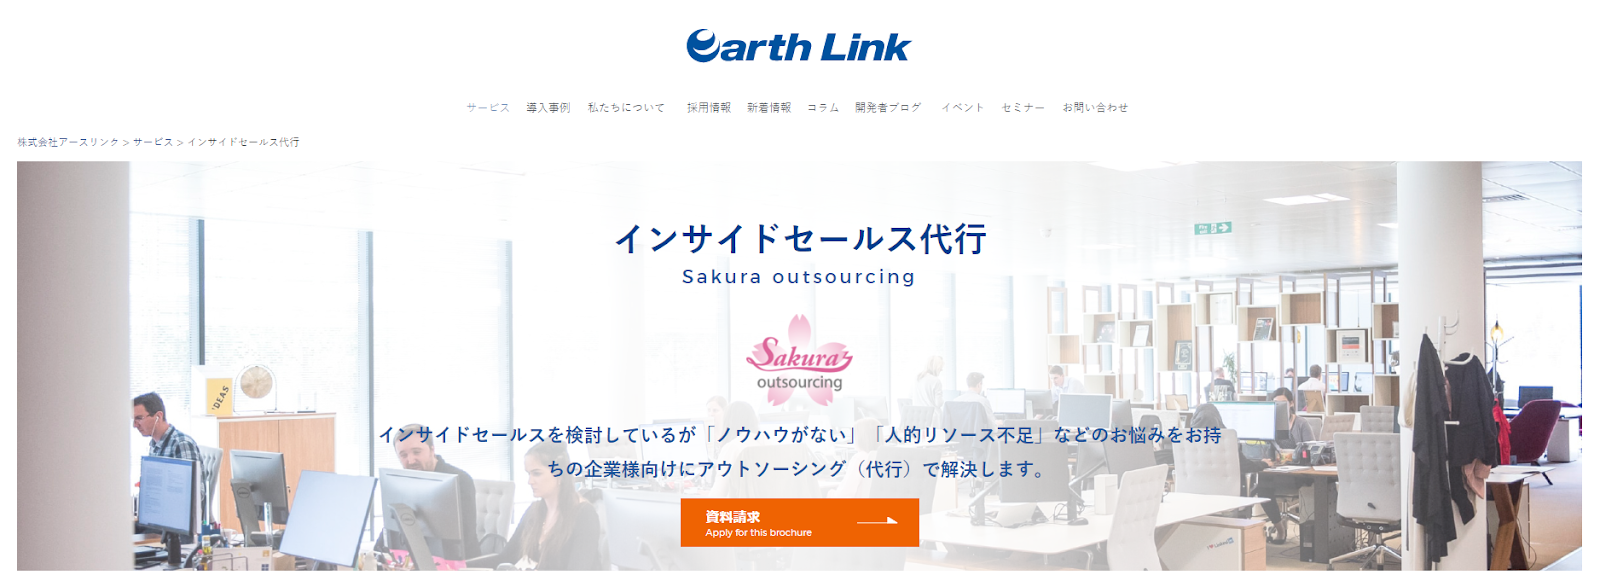 インサイドセールス代行業者、株式会社アースリンクの Sakura outsourcing